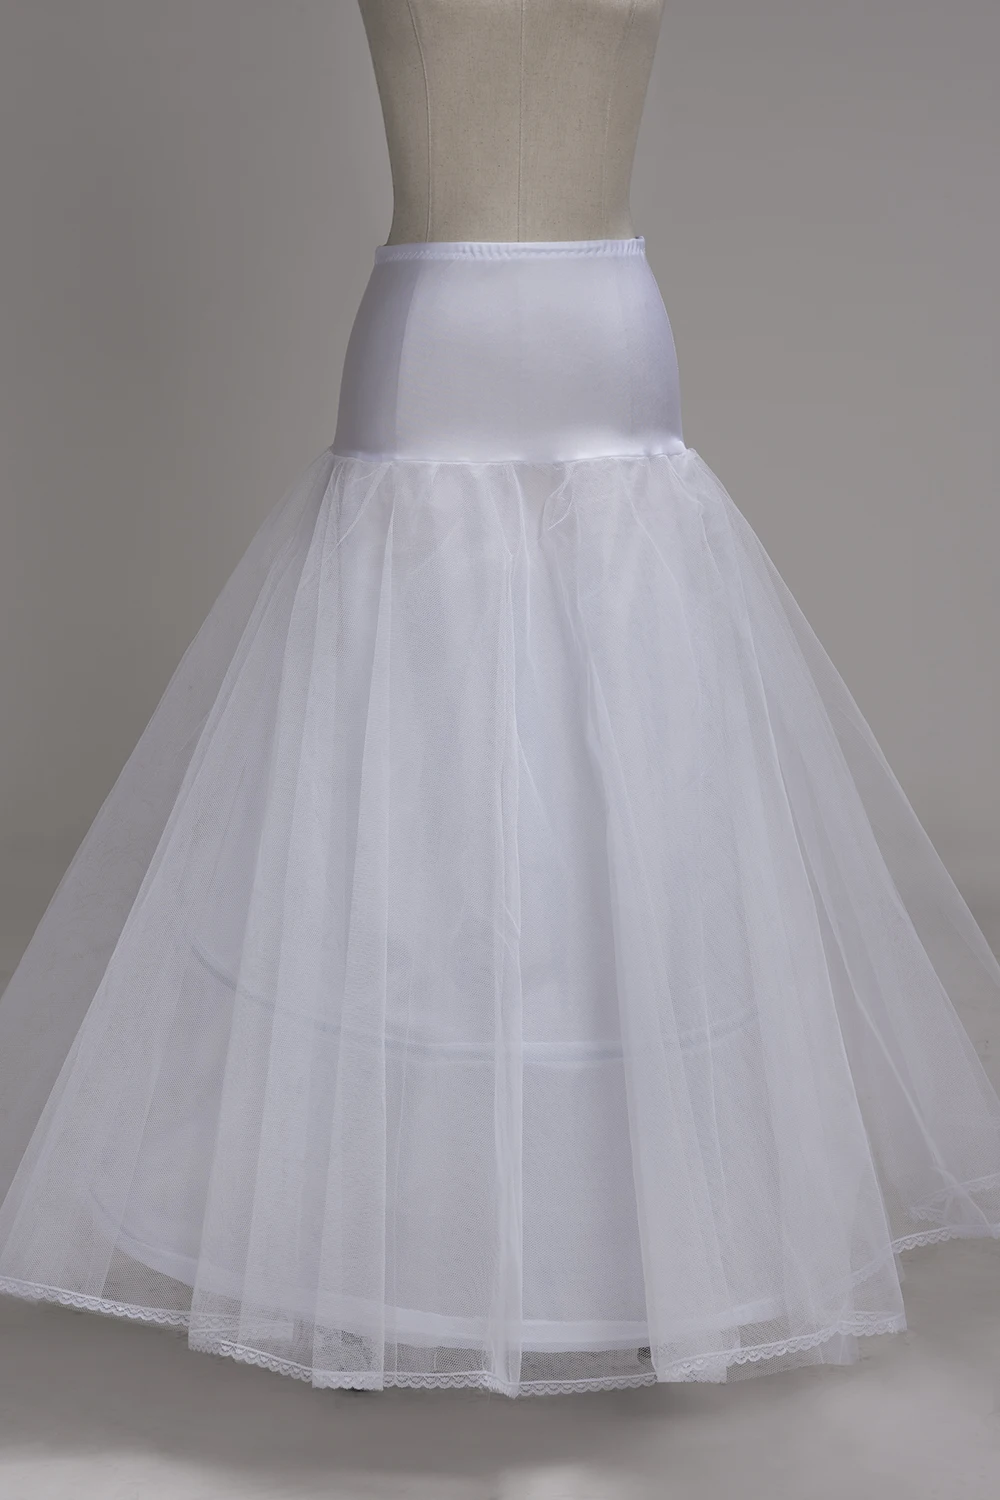 A-Line 2 обручи юбки для торжественное платье свадебные аксессуары кринолин дешевые белый длинный Нижняя Размеры